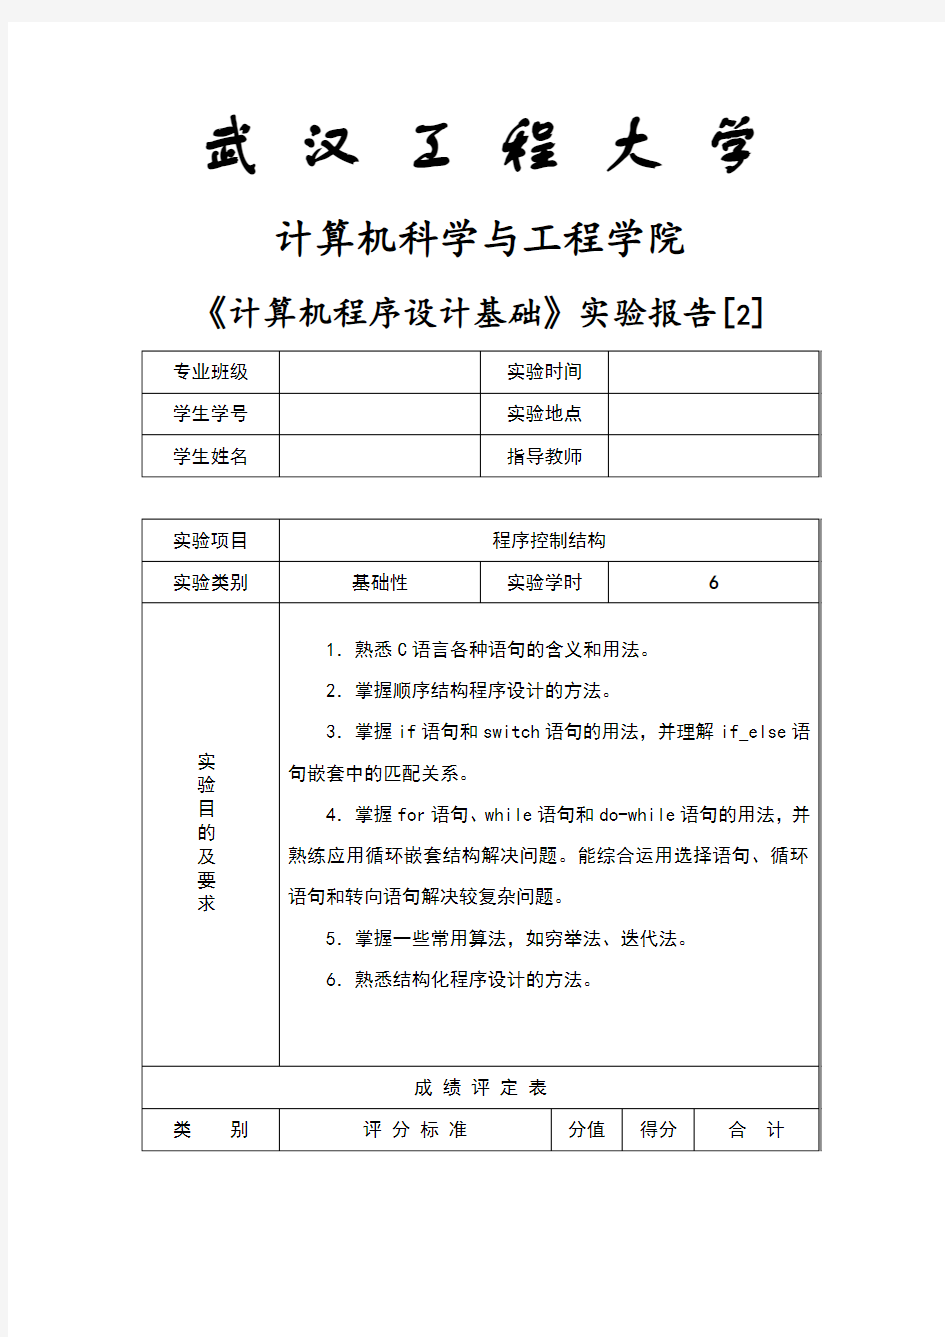 武汉工程大学版《计算机程序设计基础》——实验报告[2]